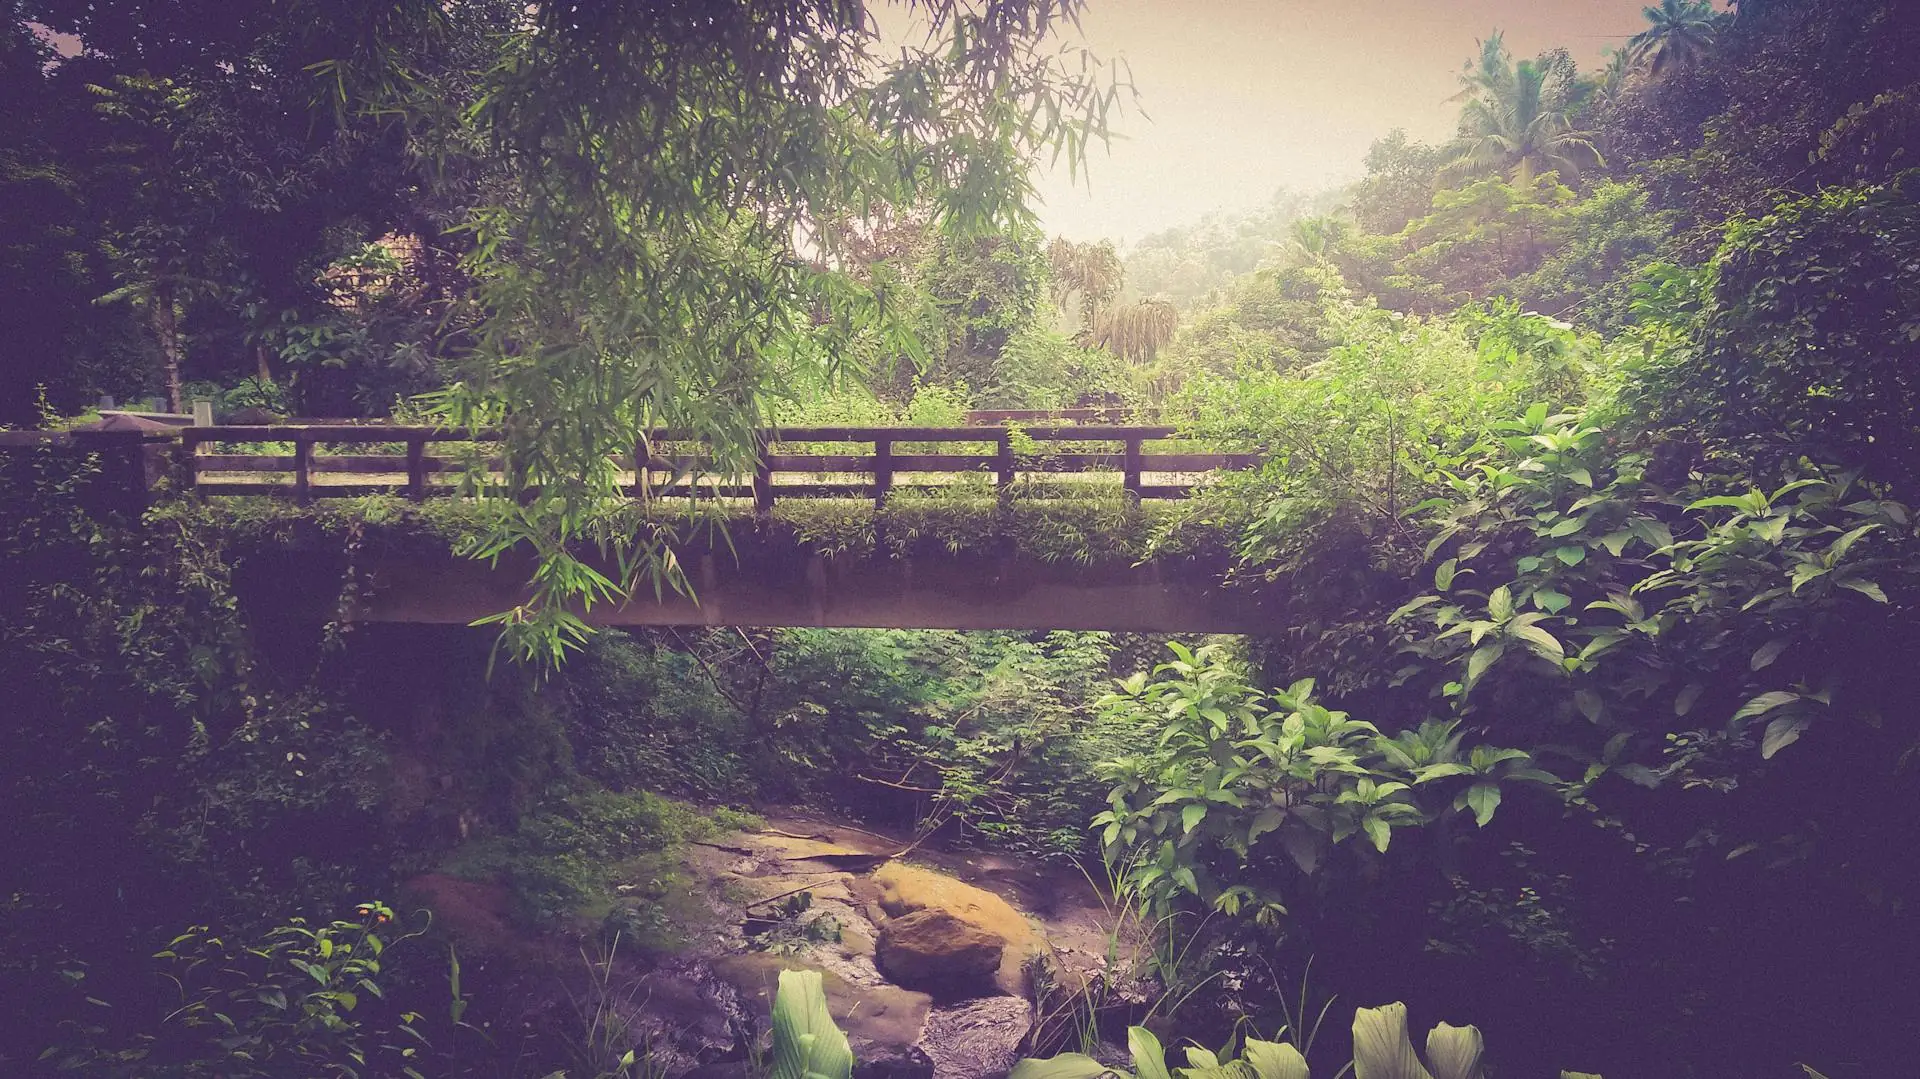 Brown wooden bridge in park with overhanging plants